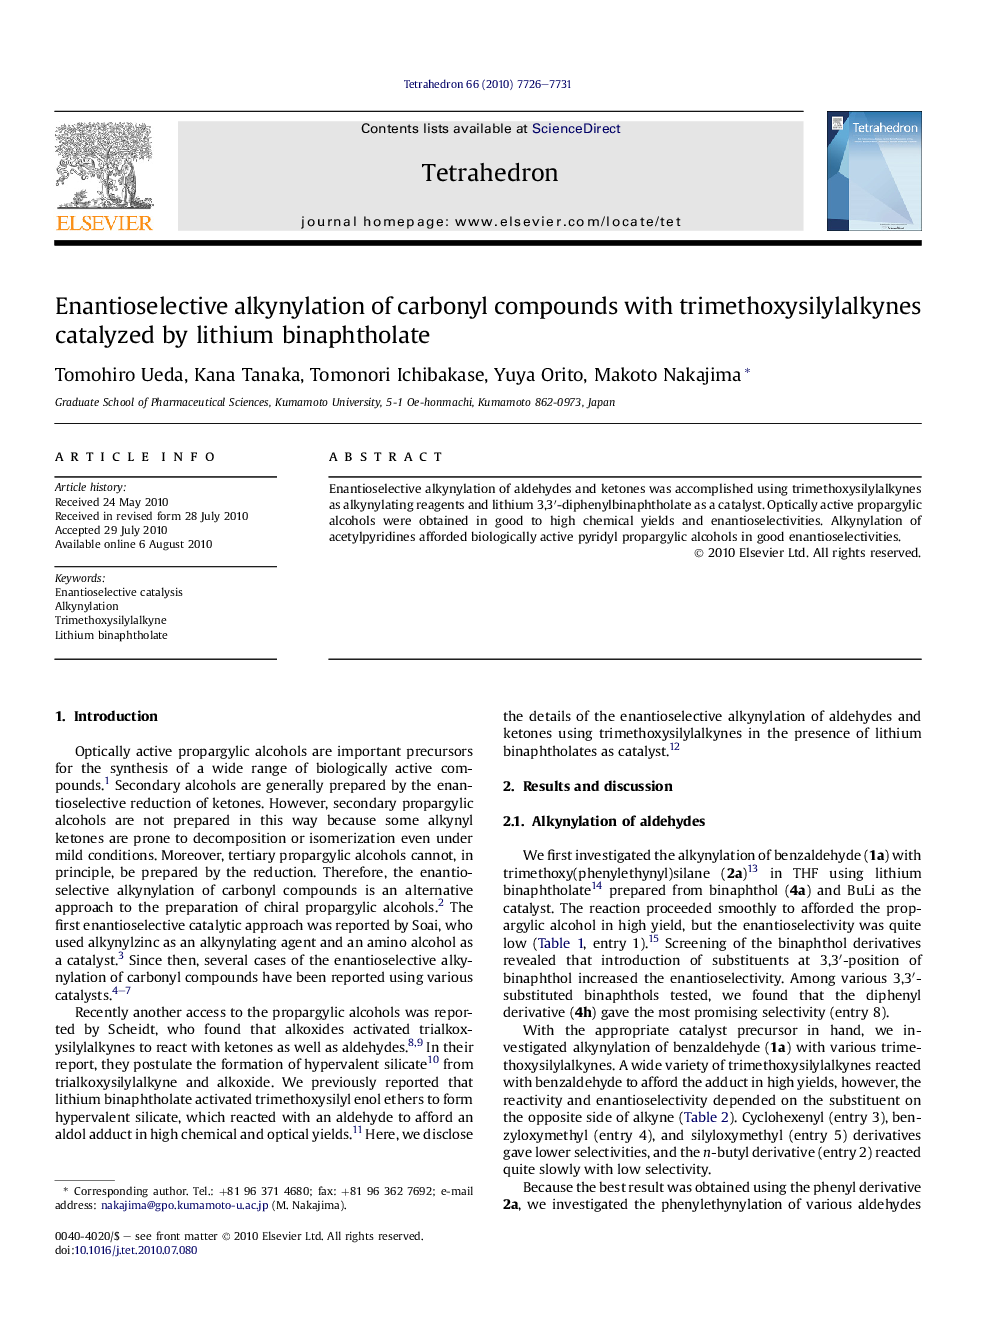 Enantioselective alkynylation of carbonyl compounds with trimethoxysilylalkynes catalyzed by lithium binaphtholate